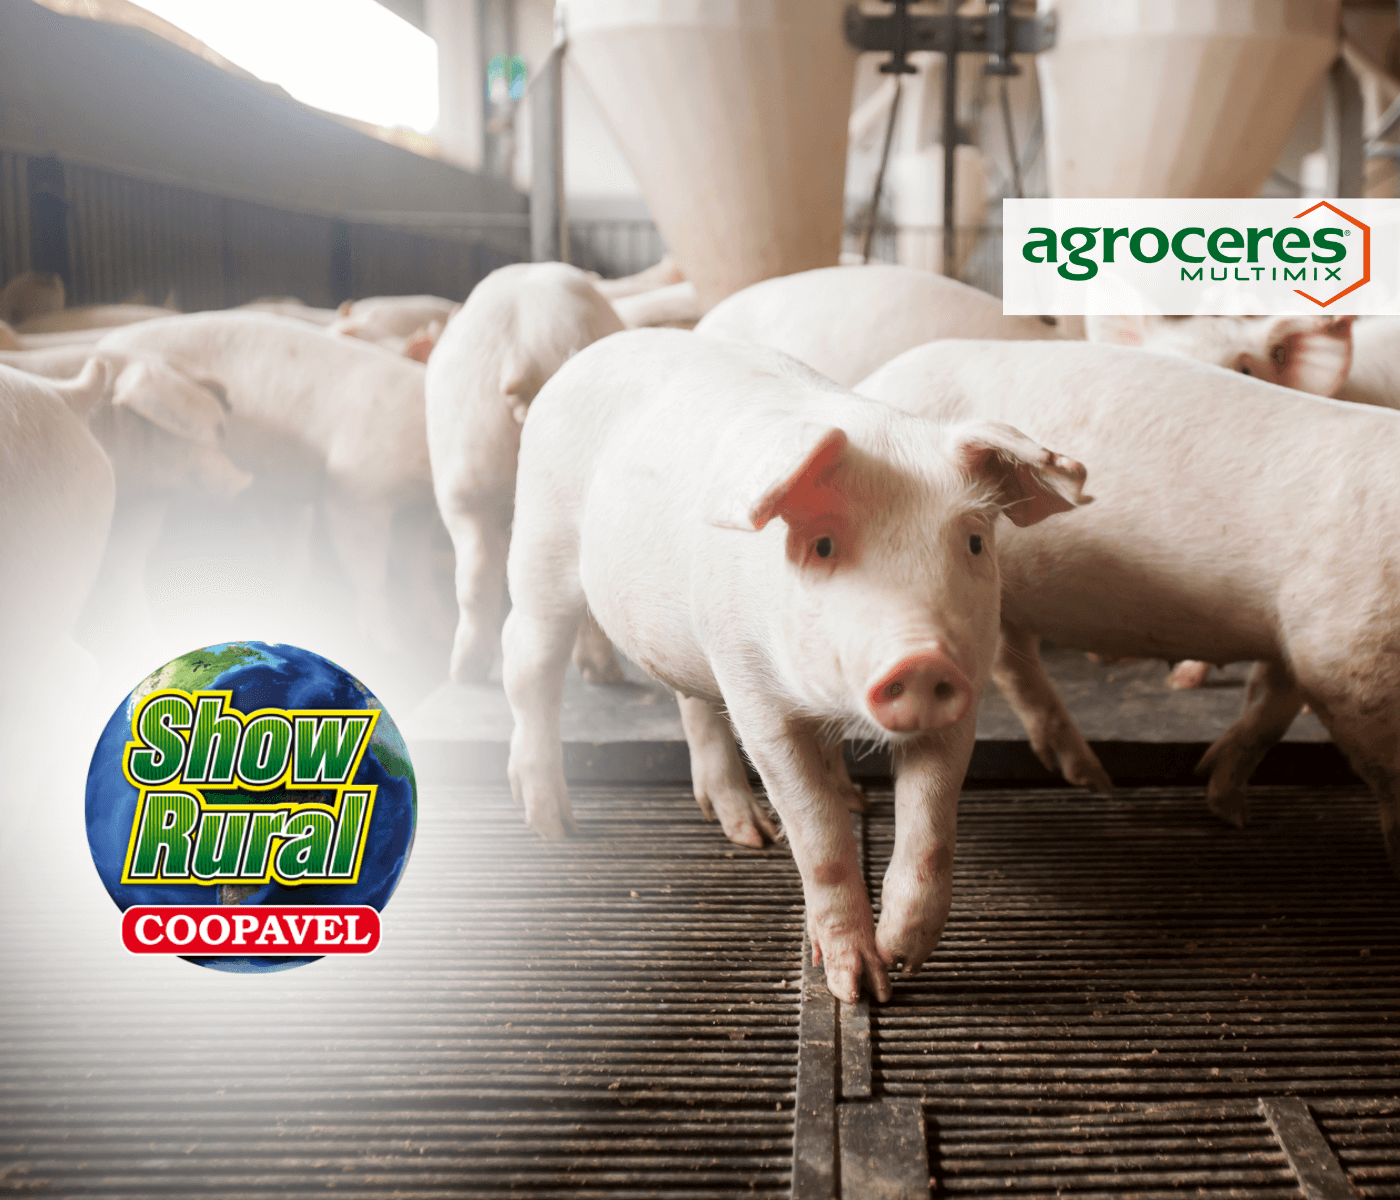 Agroceres Multimix marca presença no Show Rural da Coopavel com equipes de suínos e bovinos de leite